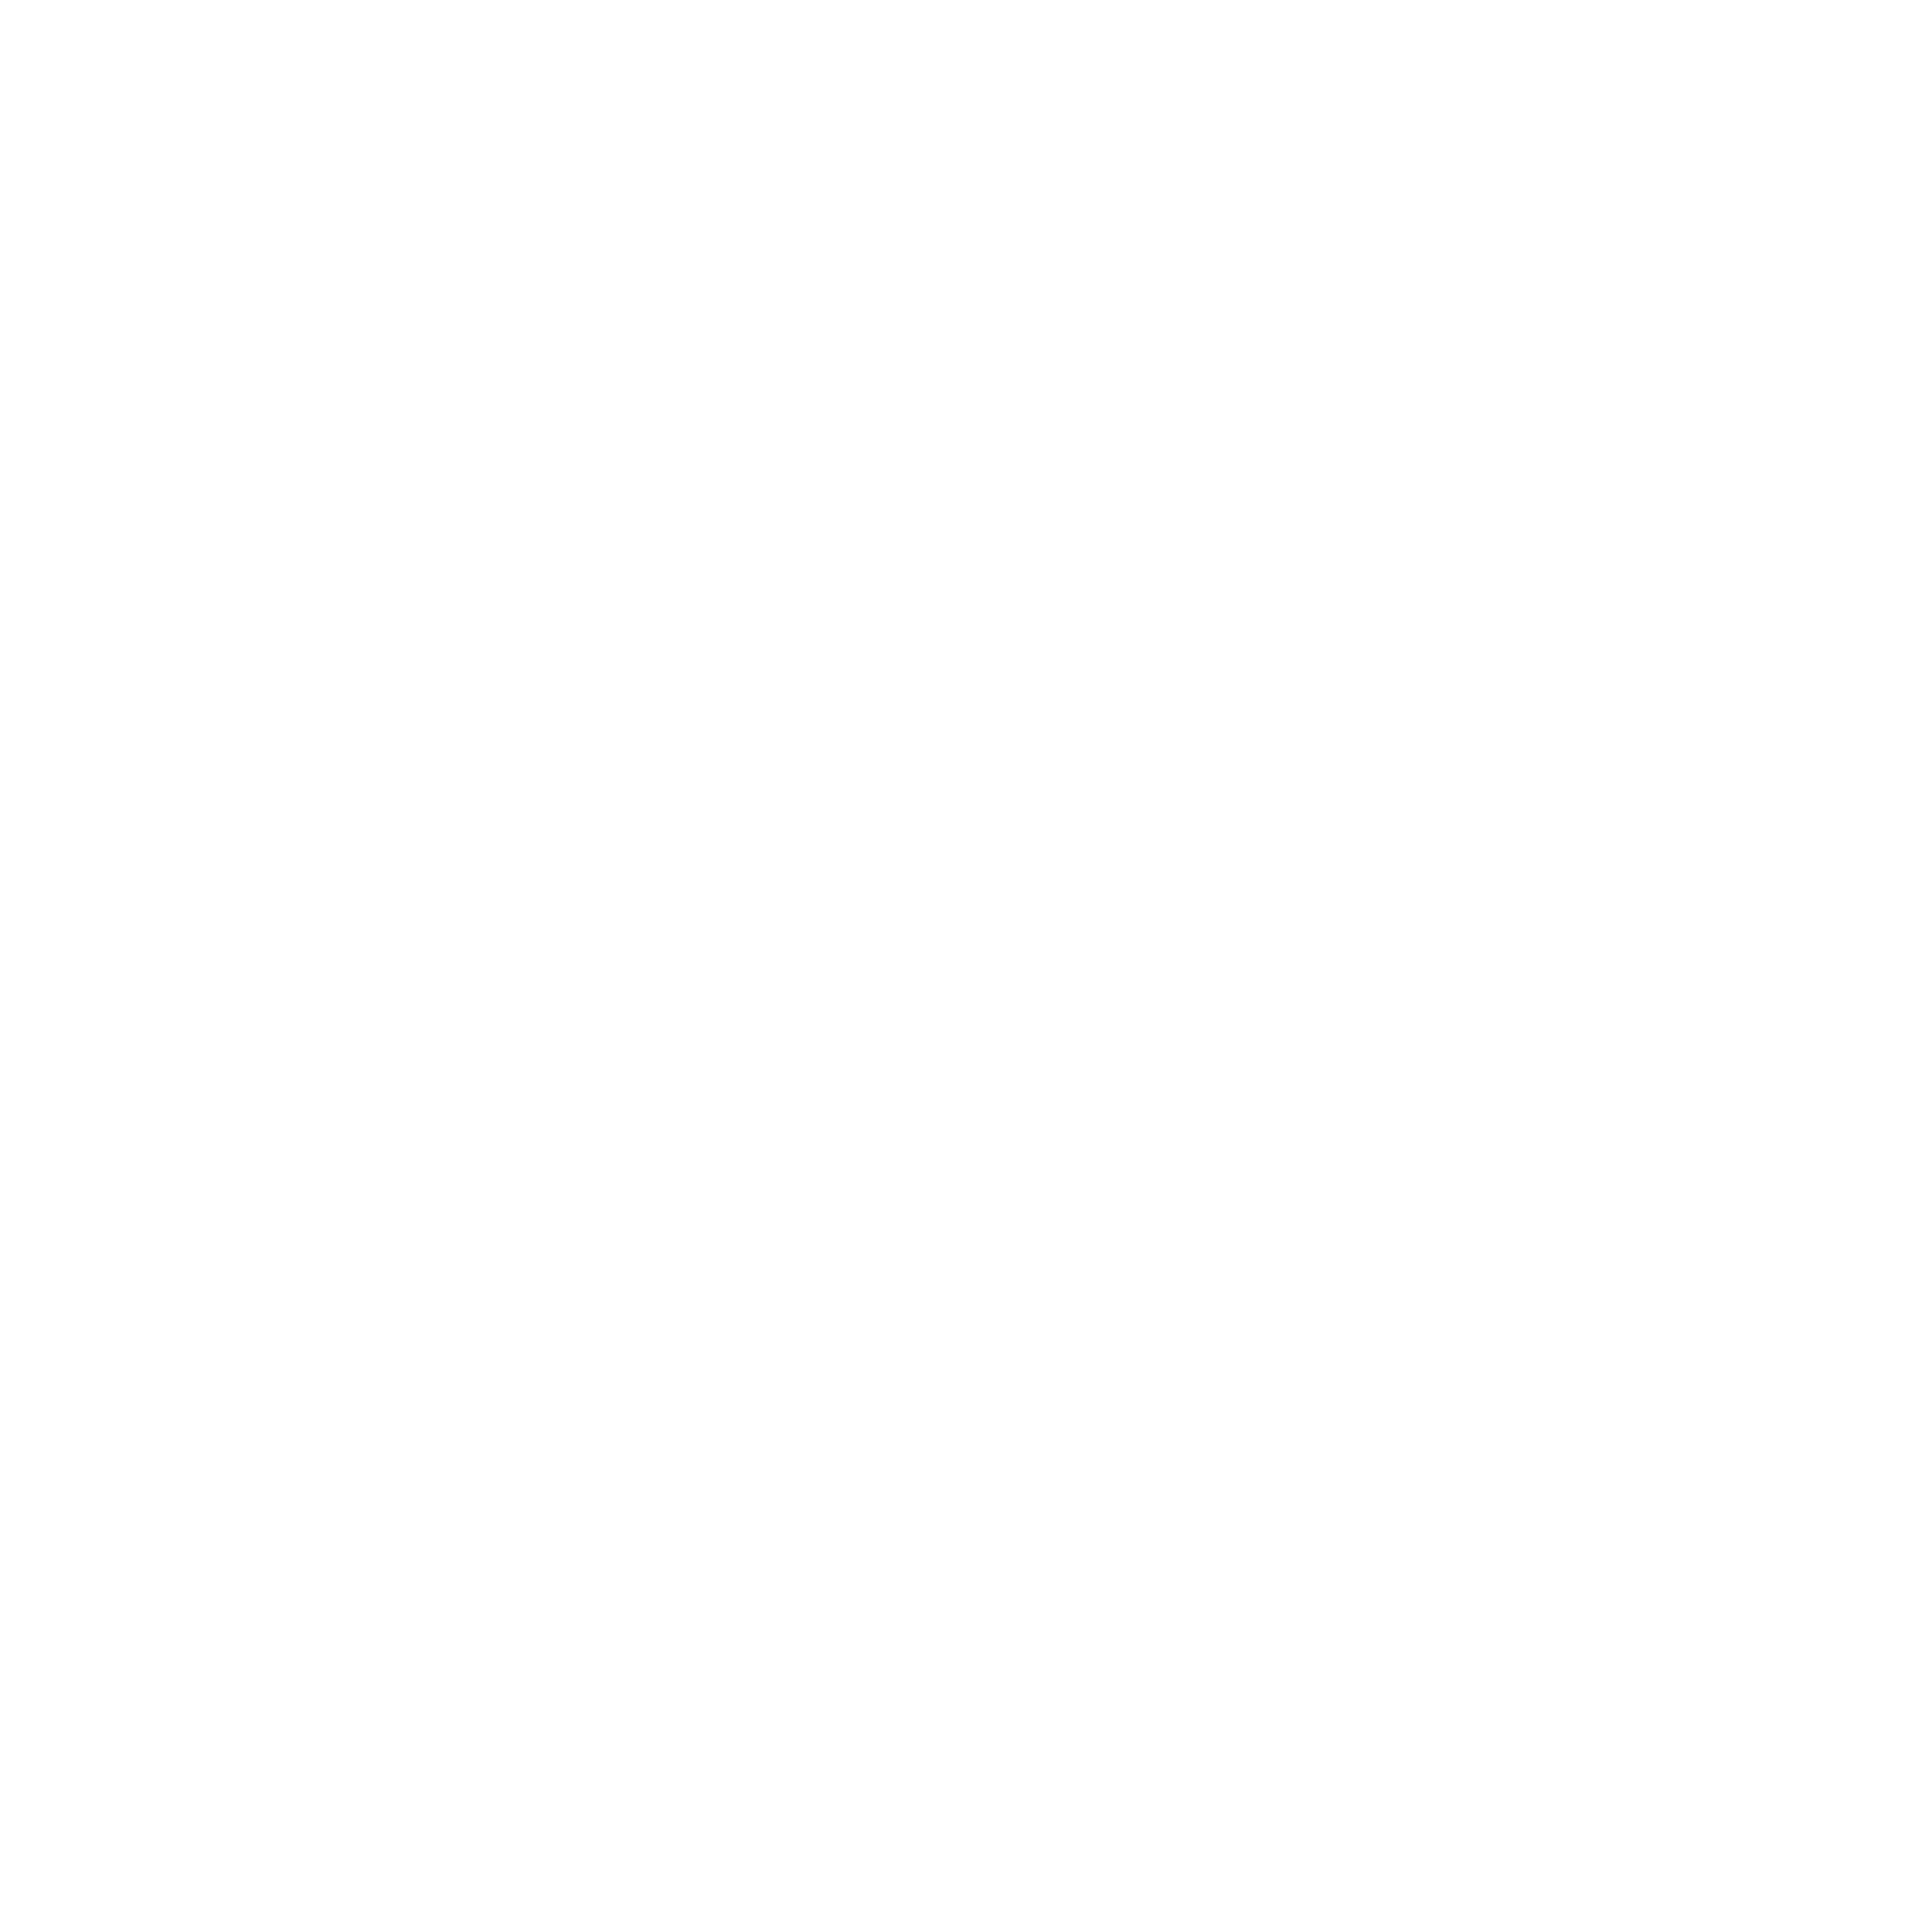 cnrs-blanco-1